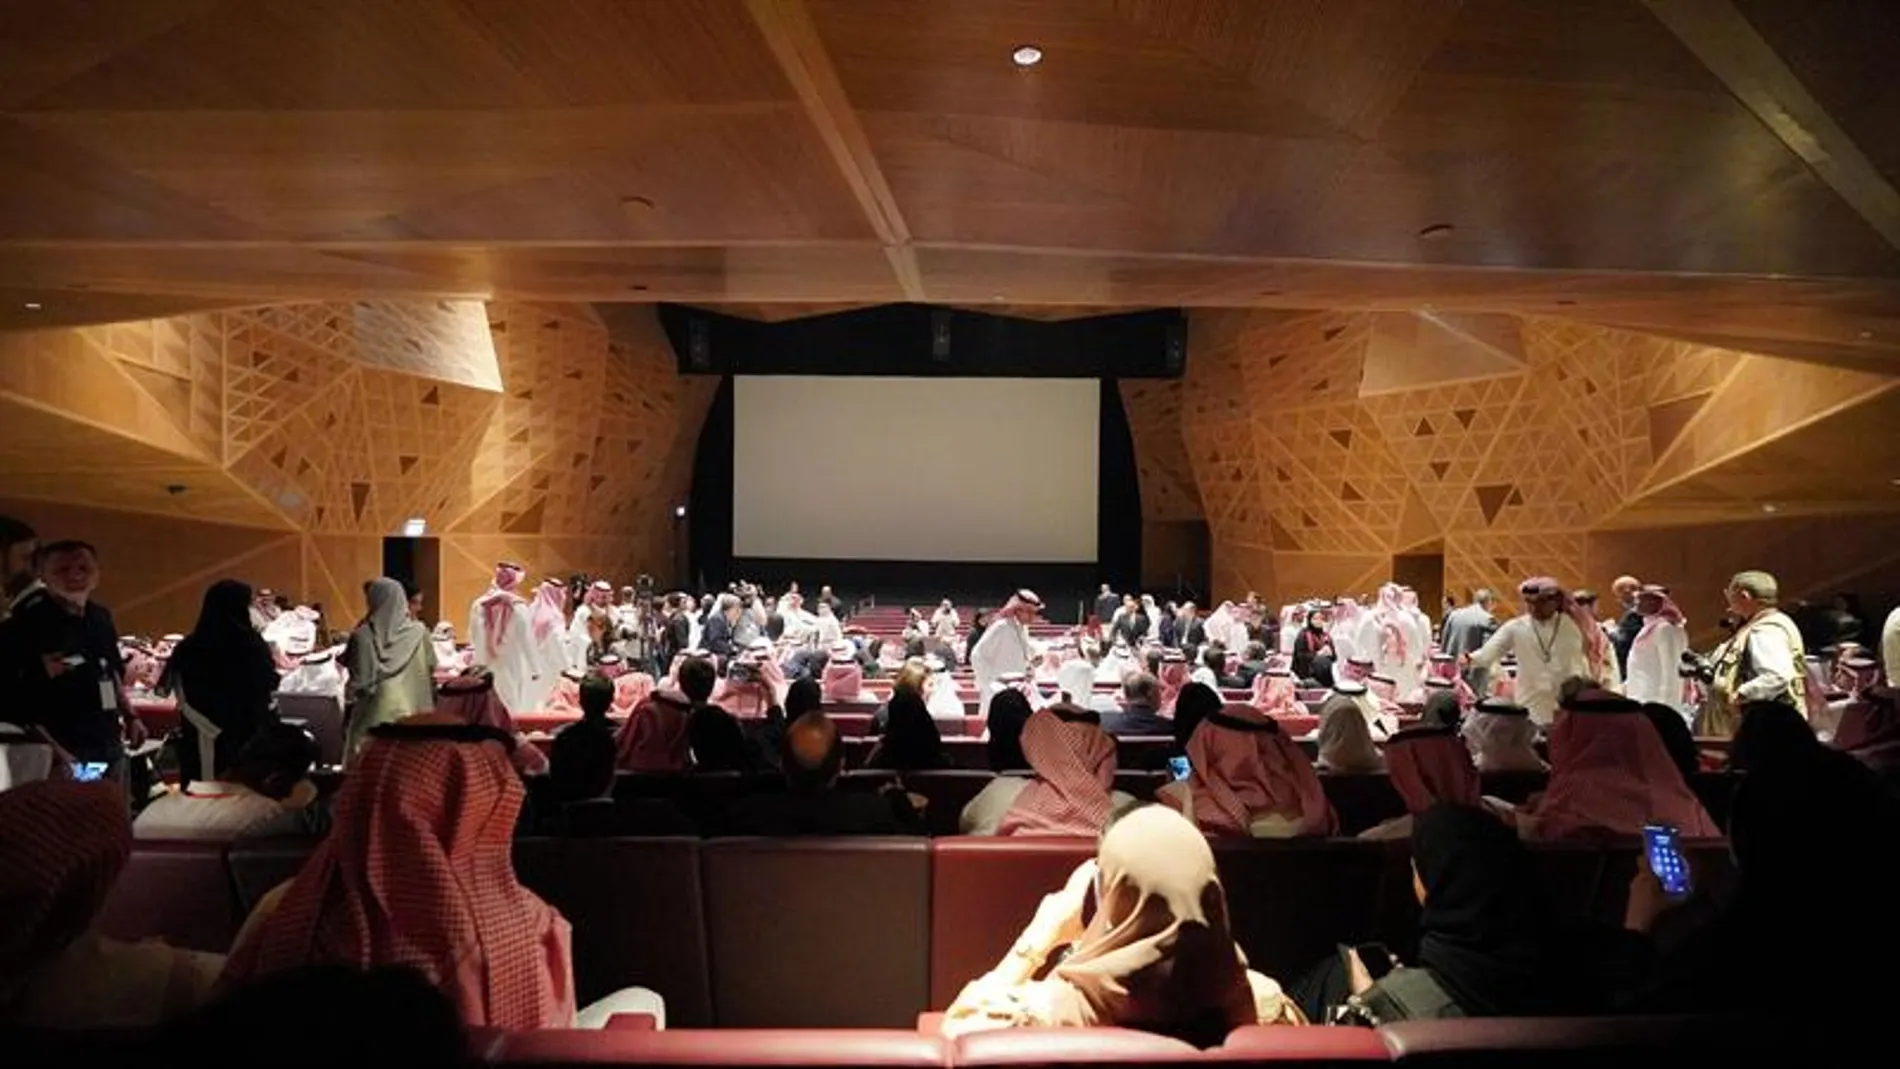 Cientos de invitados asisten a la inauguración del primer cine público de Arabia Saudí